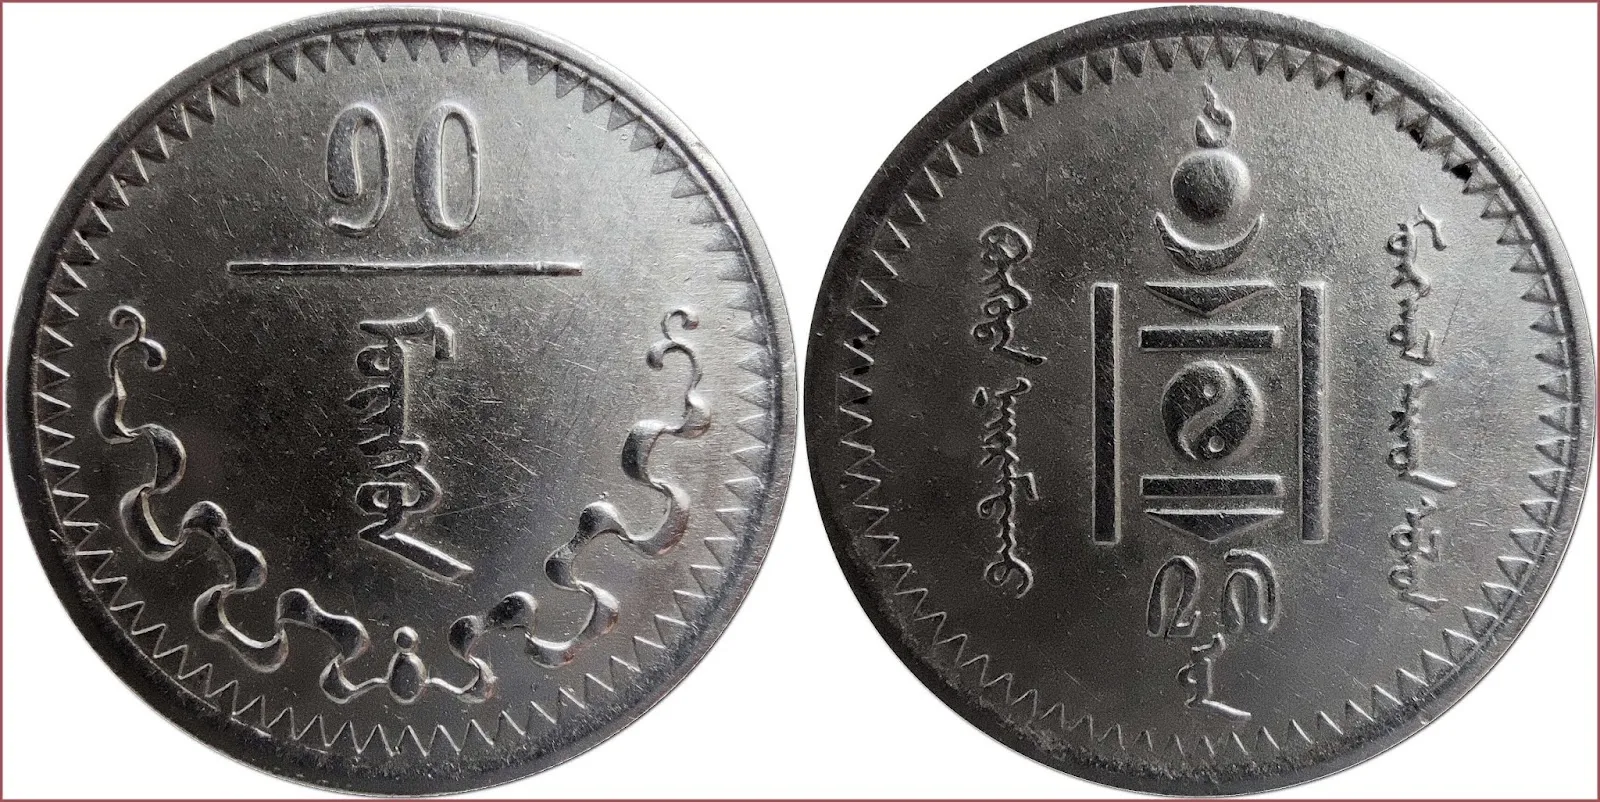 10 möngö (ᠮᠥᠩᠭᠥᠨ or мөнгө), 1937: Mongolian People's Republic